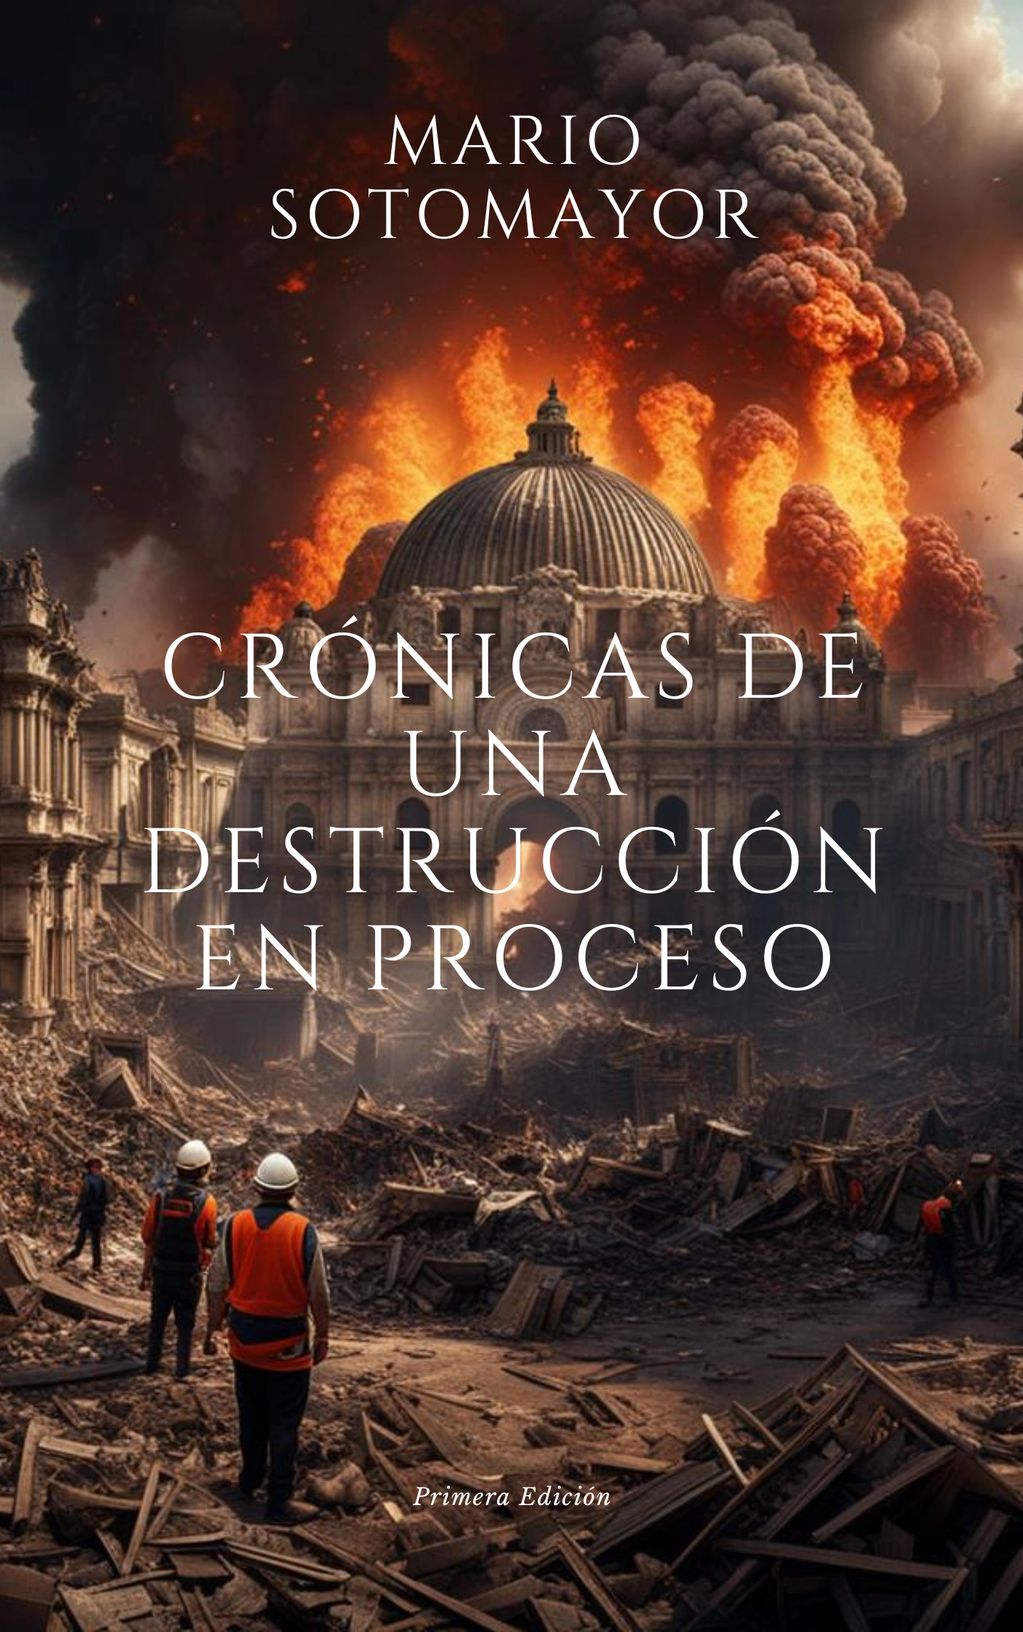 "Crónicas de una destrucción en proceso"